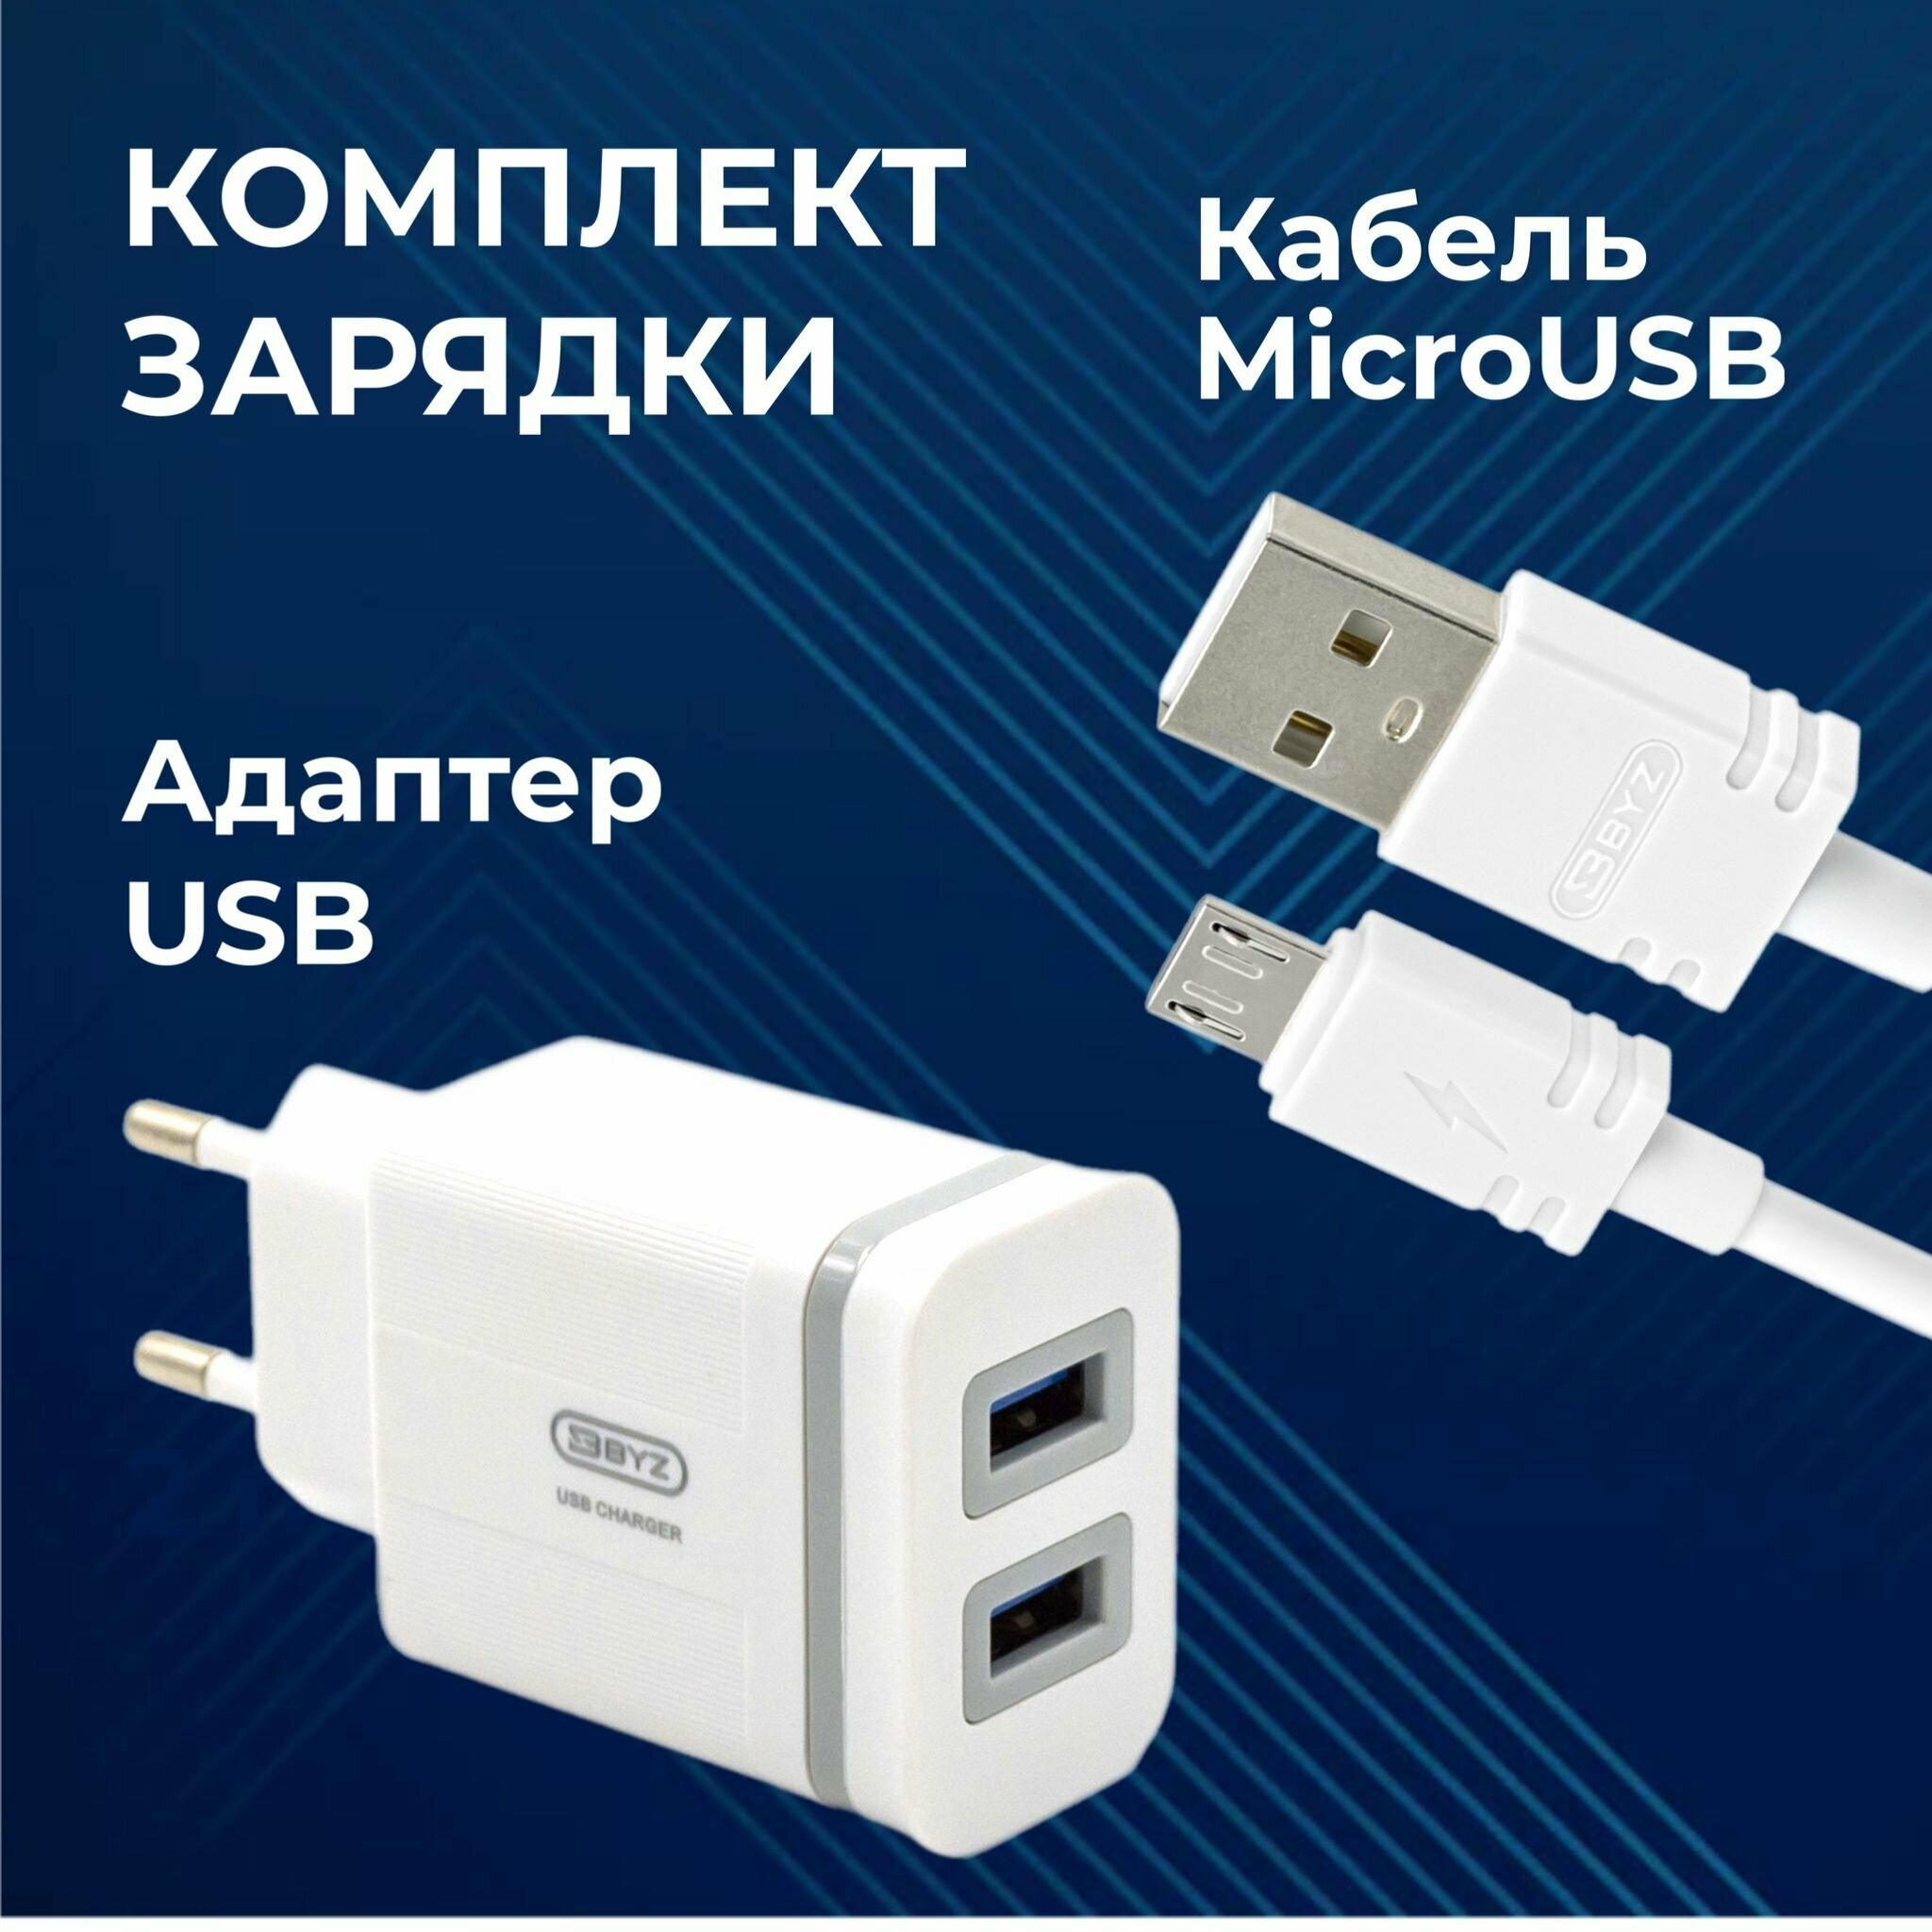 Сетевое зарядное устройство + кабель microUSB / Зарядка для Android / Блок питания сетевой, 2 порта USB